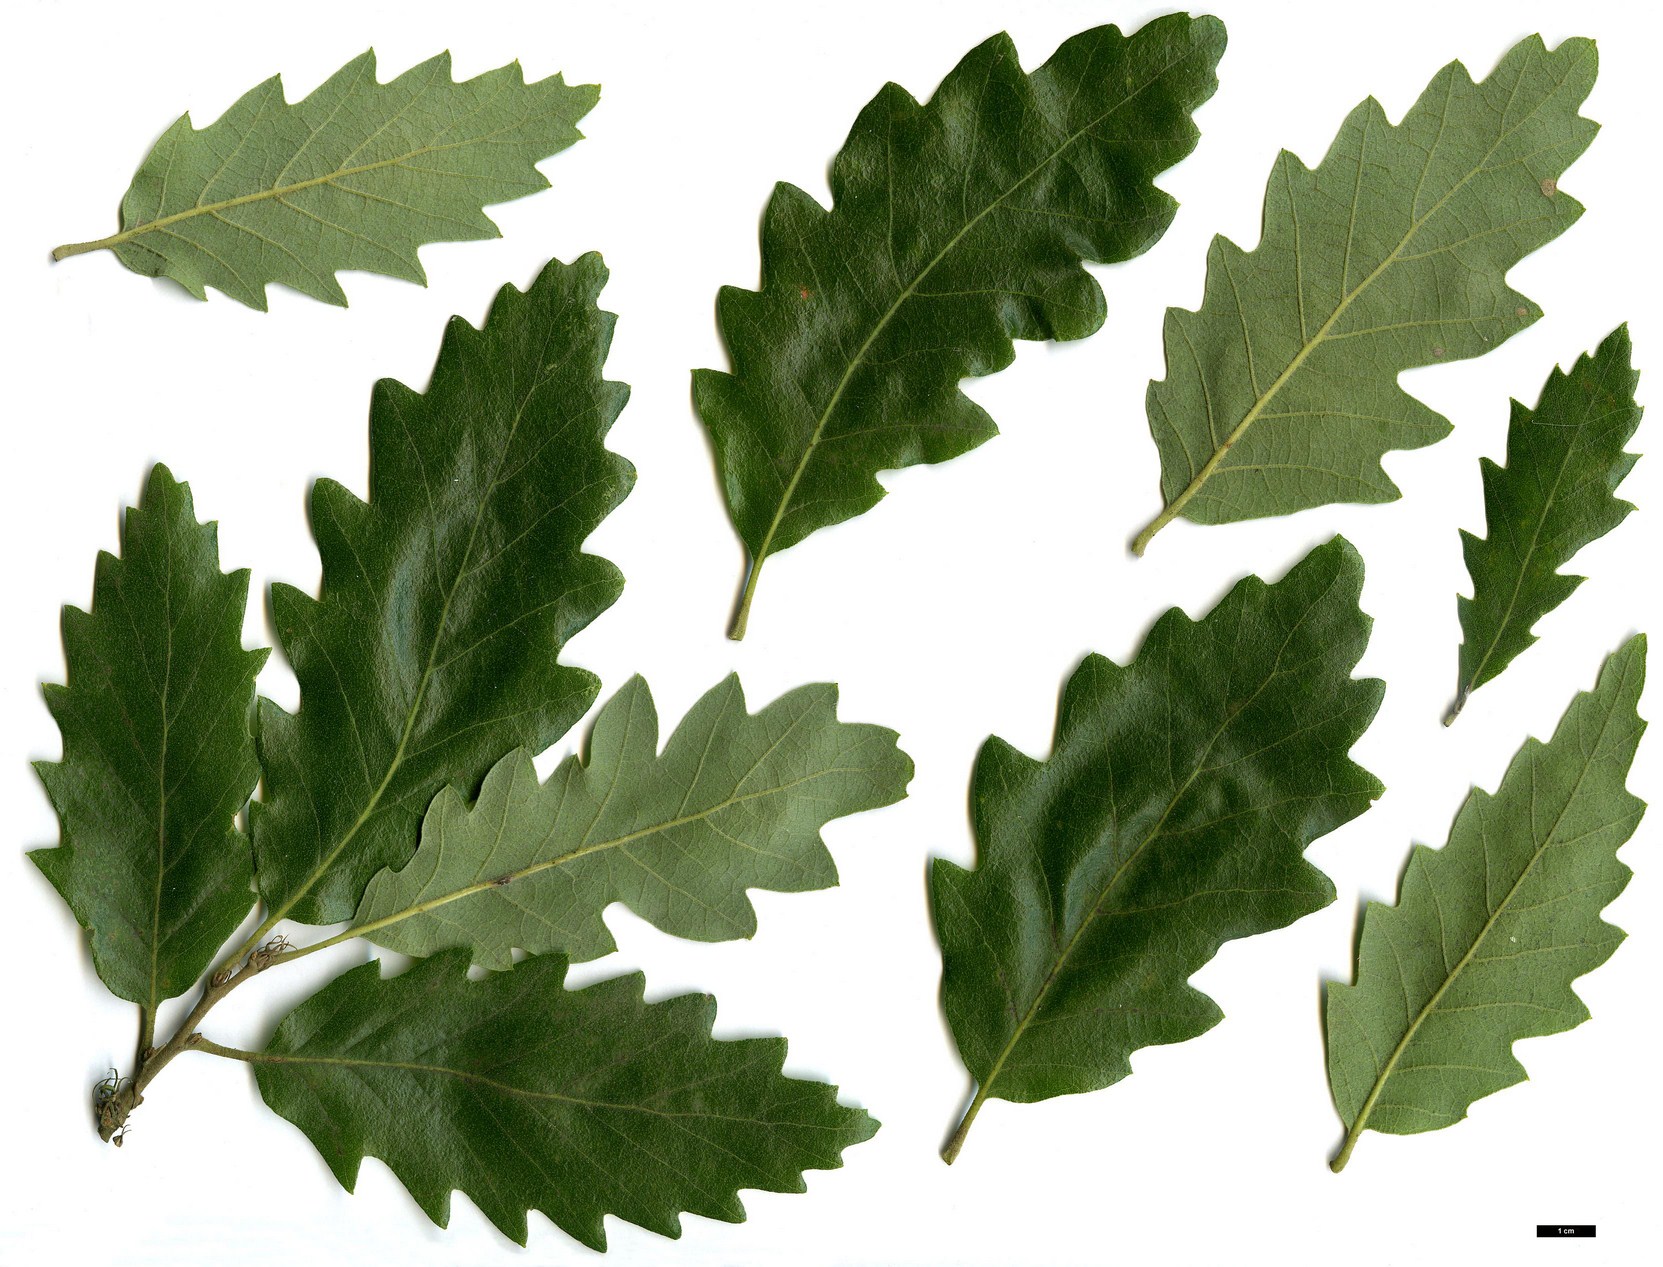 High resolution image: Family: Fagaceae - Genus: Quercus - Taxon: ×crenata (Q.cerris × Q.suber)